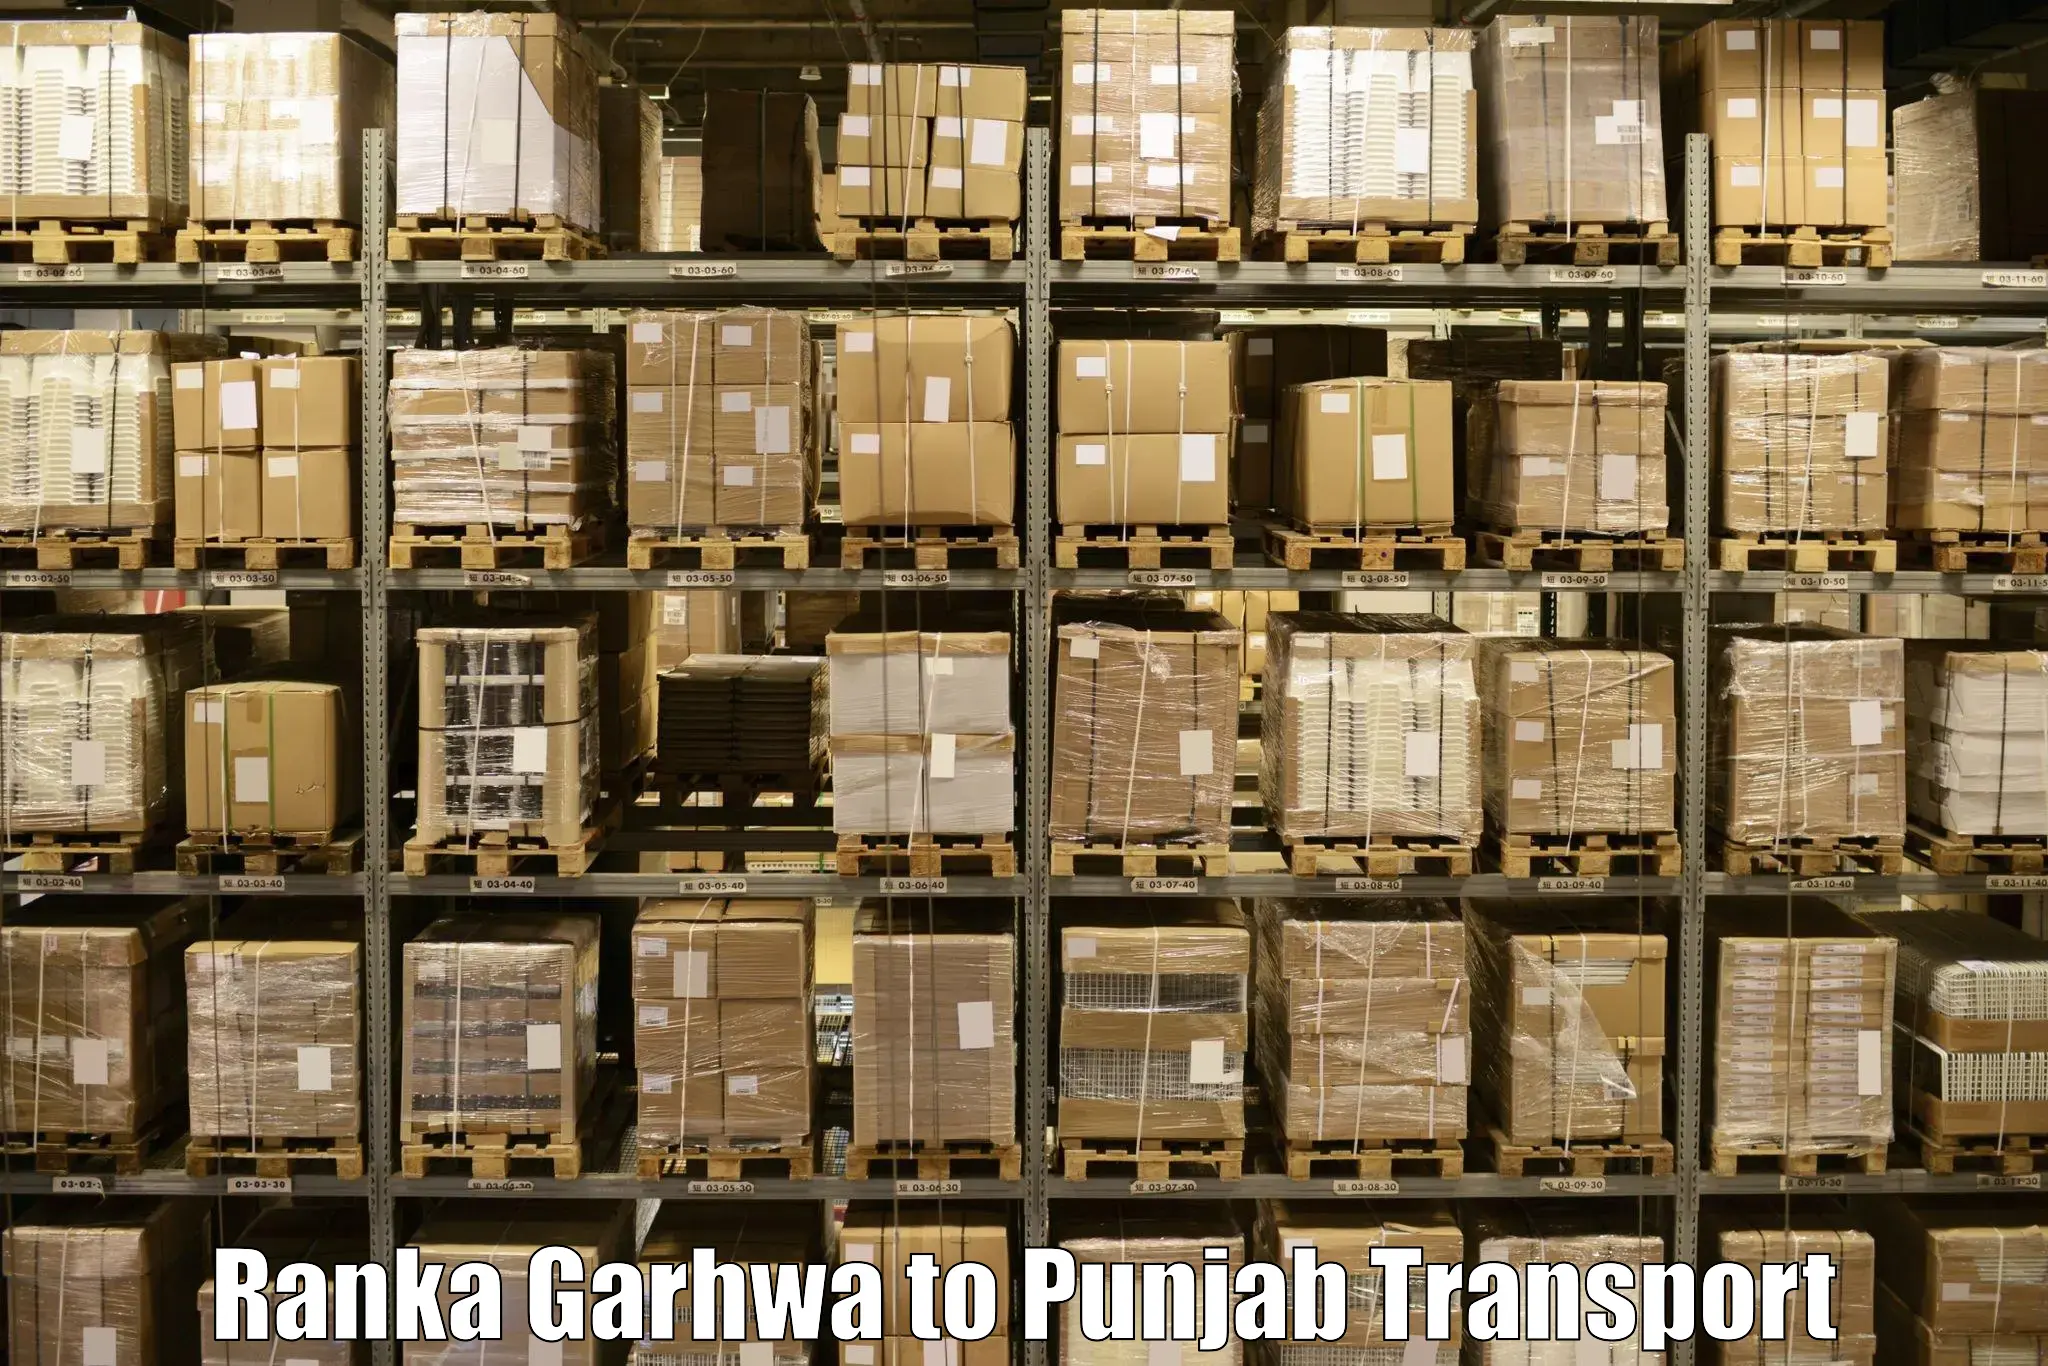 Transport services in Ranka Garhwa to Punjab